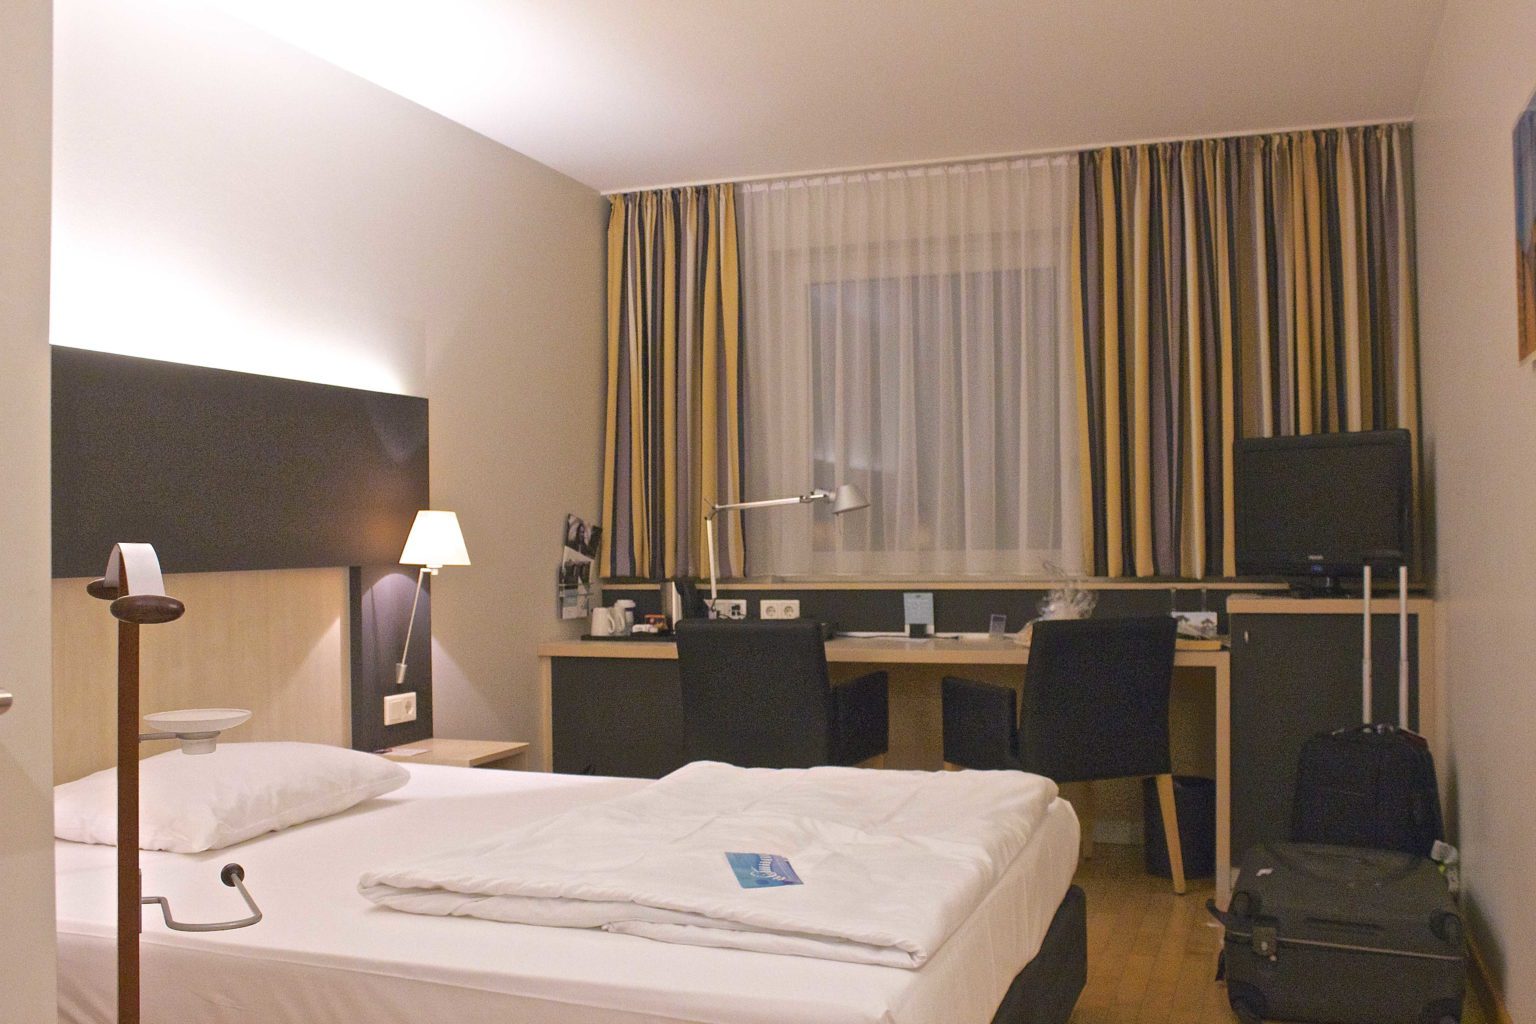 Hotellomtale: Mercure Berlin City 4*, Berlin, Tyskland